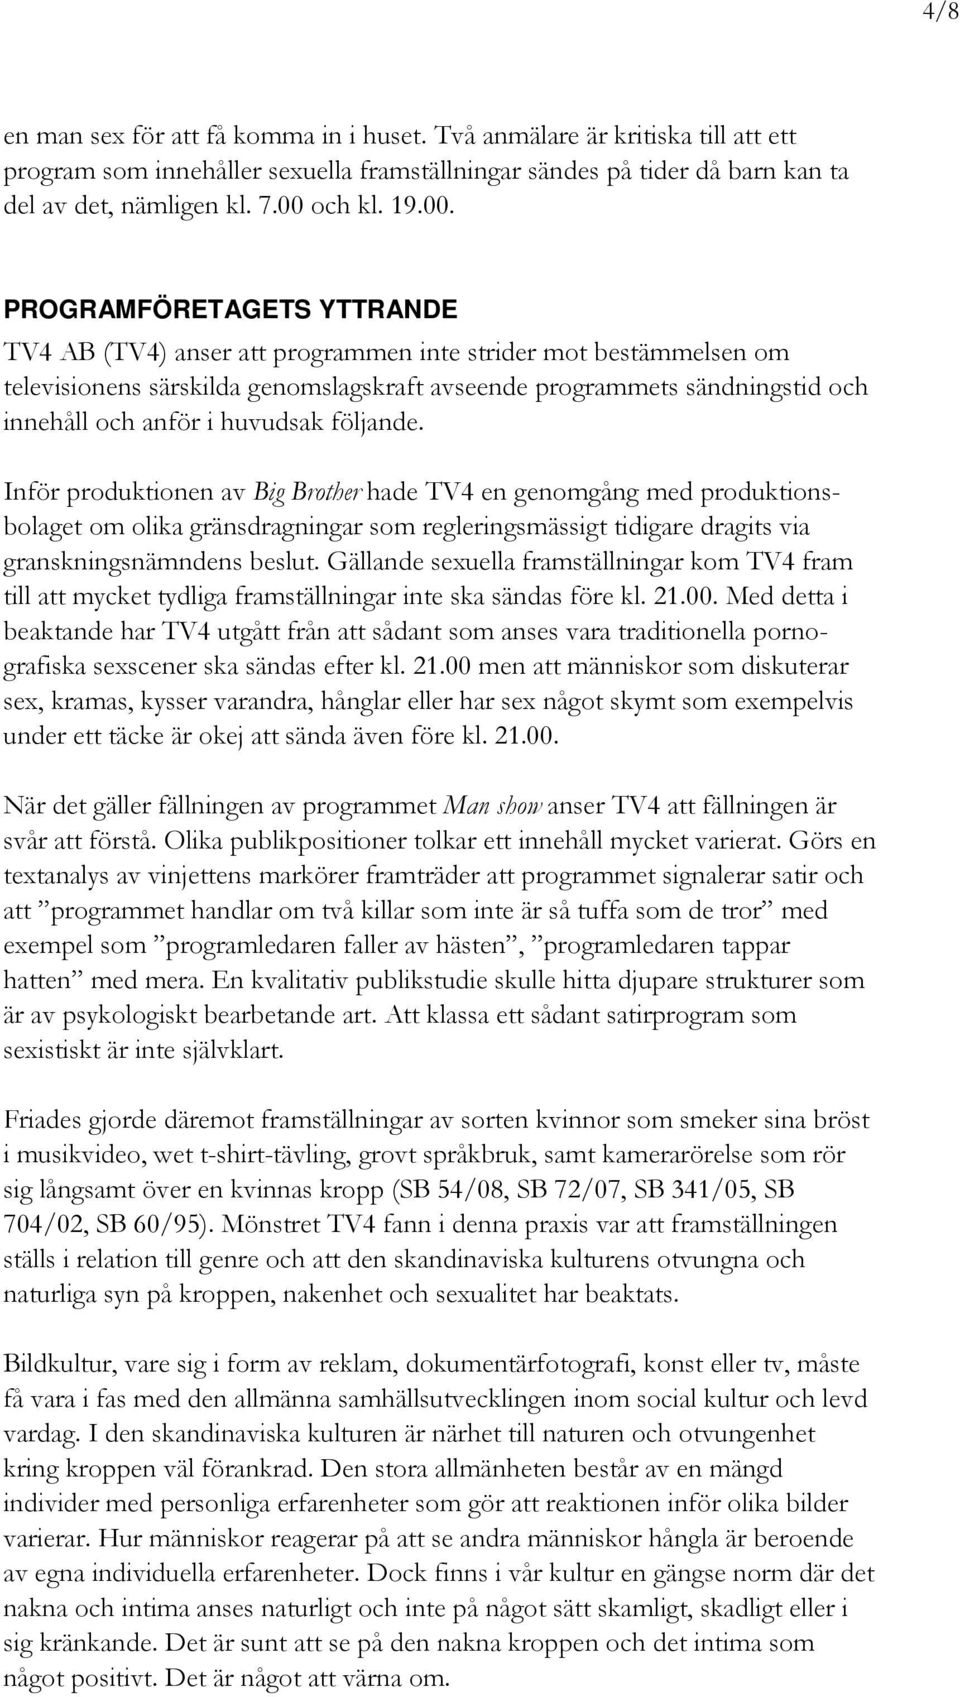 PROGRAMFÖRETAGETS YTTRANDE TV4 AB (TV4) anser att programmen inte strider mot bestämmelsen om televisionens särskilda genomslagskraft avseende programmets sändningstid och innehåll och anför i